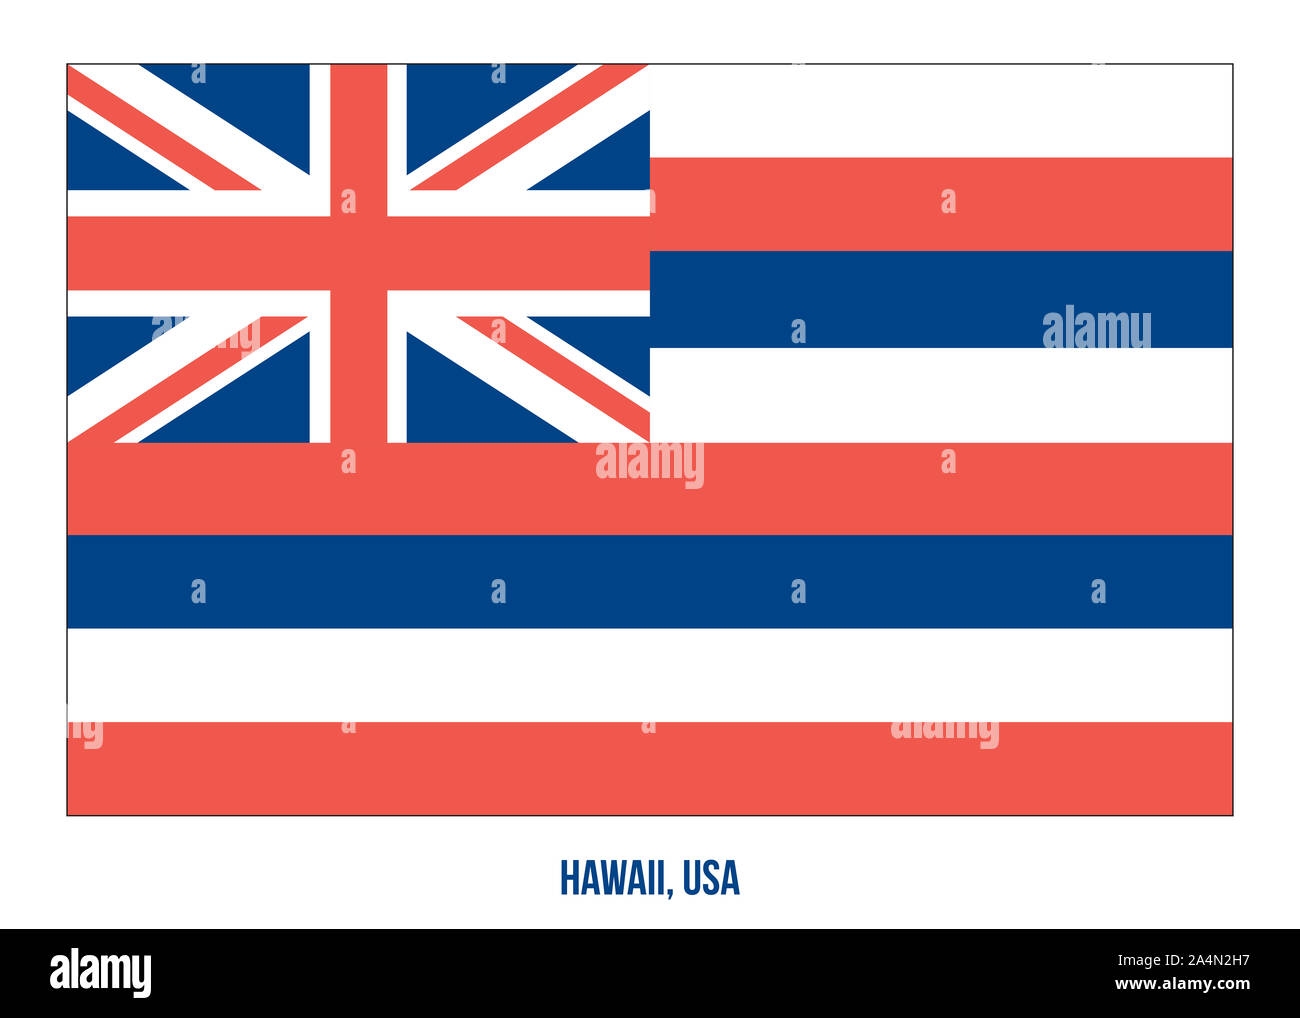 Printable Hawaii State Flag